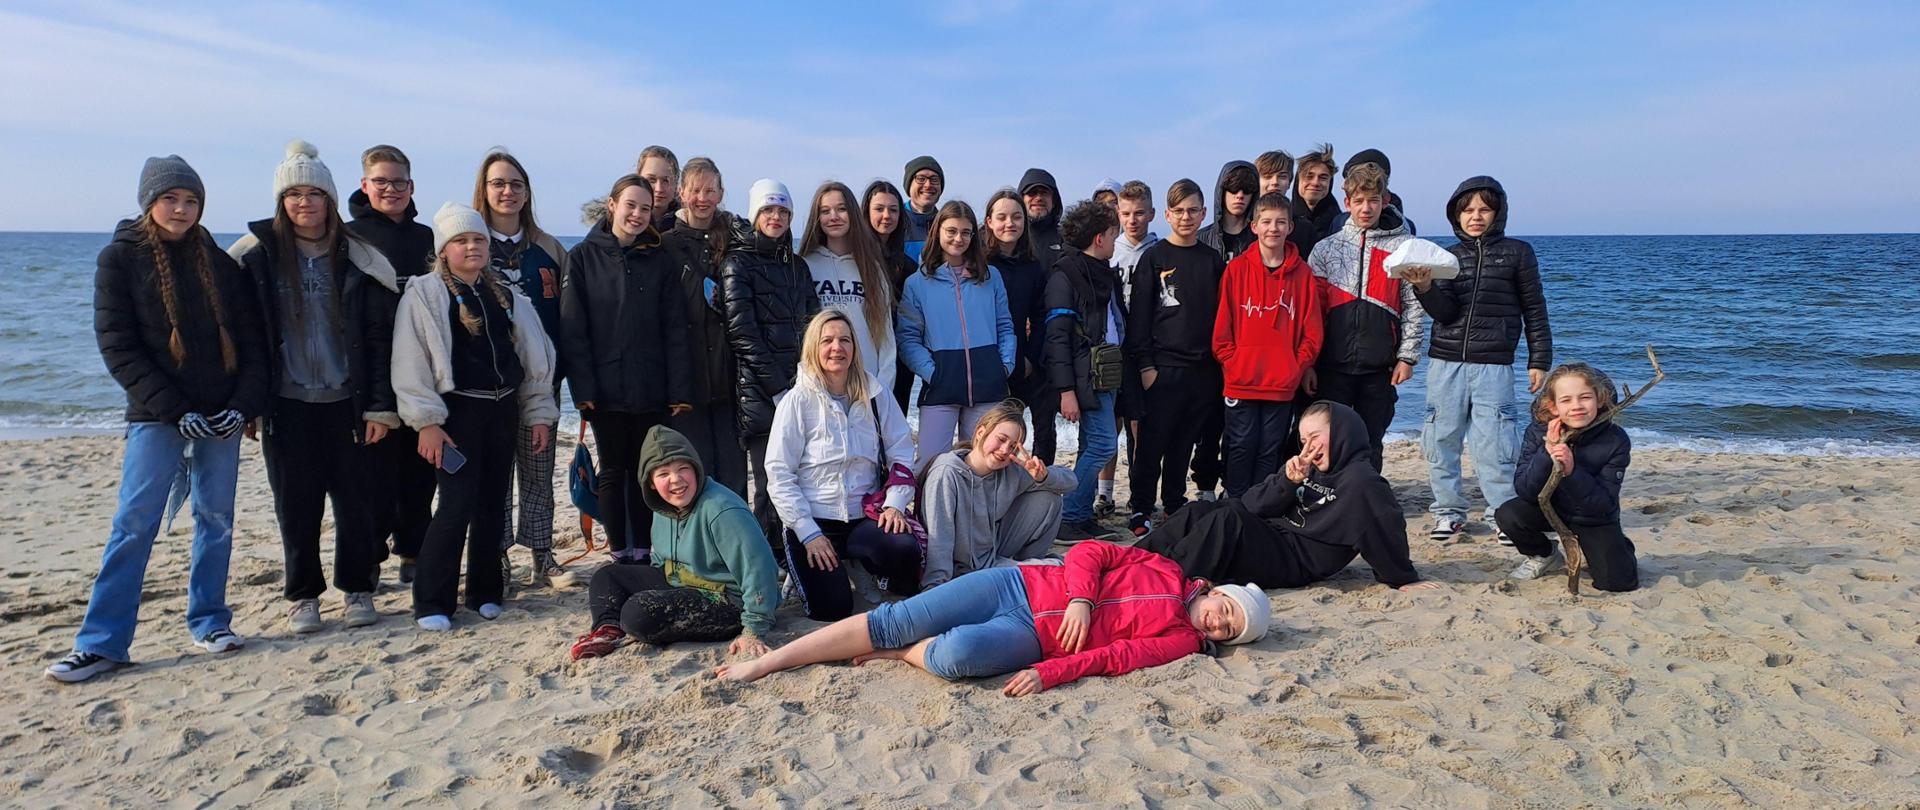 Na plaży, na tle morza Bałtyckiego pozują do zdjęcia uczestnicy obozu kondycyjnego wraz z opiekunami.